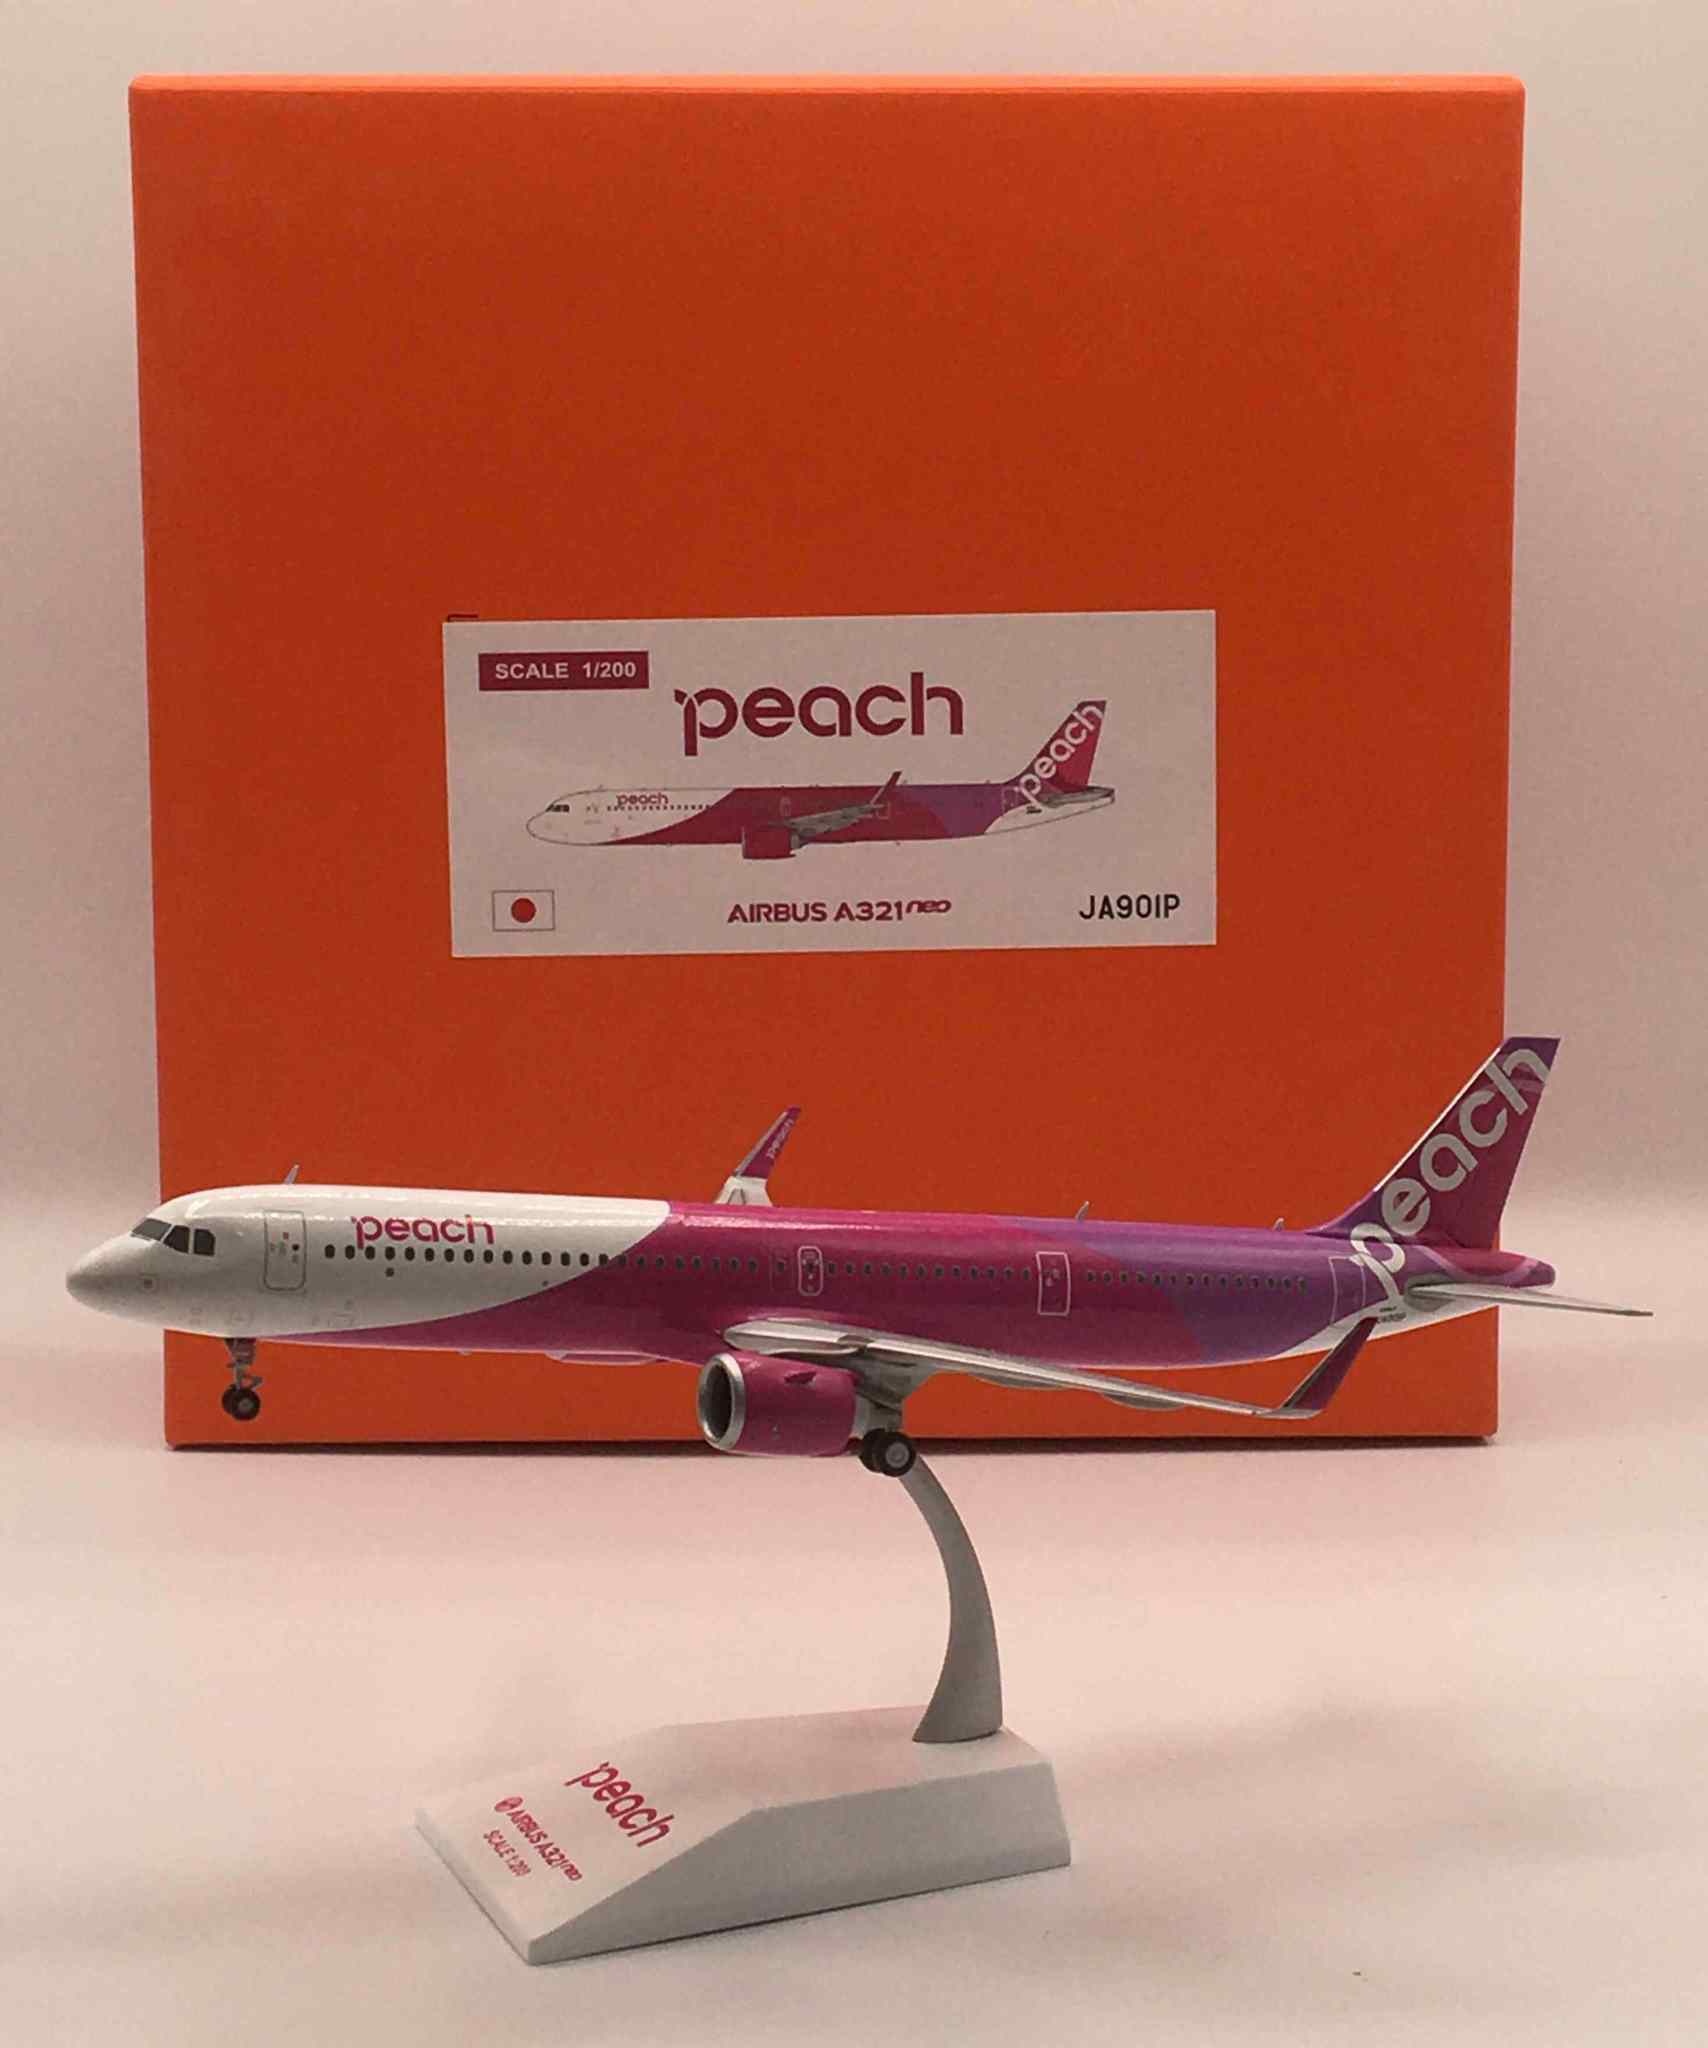 A321neo Peach Airbus JA901P 1:200